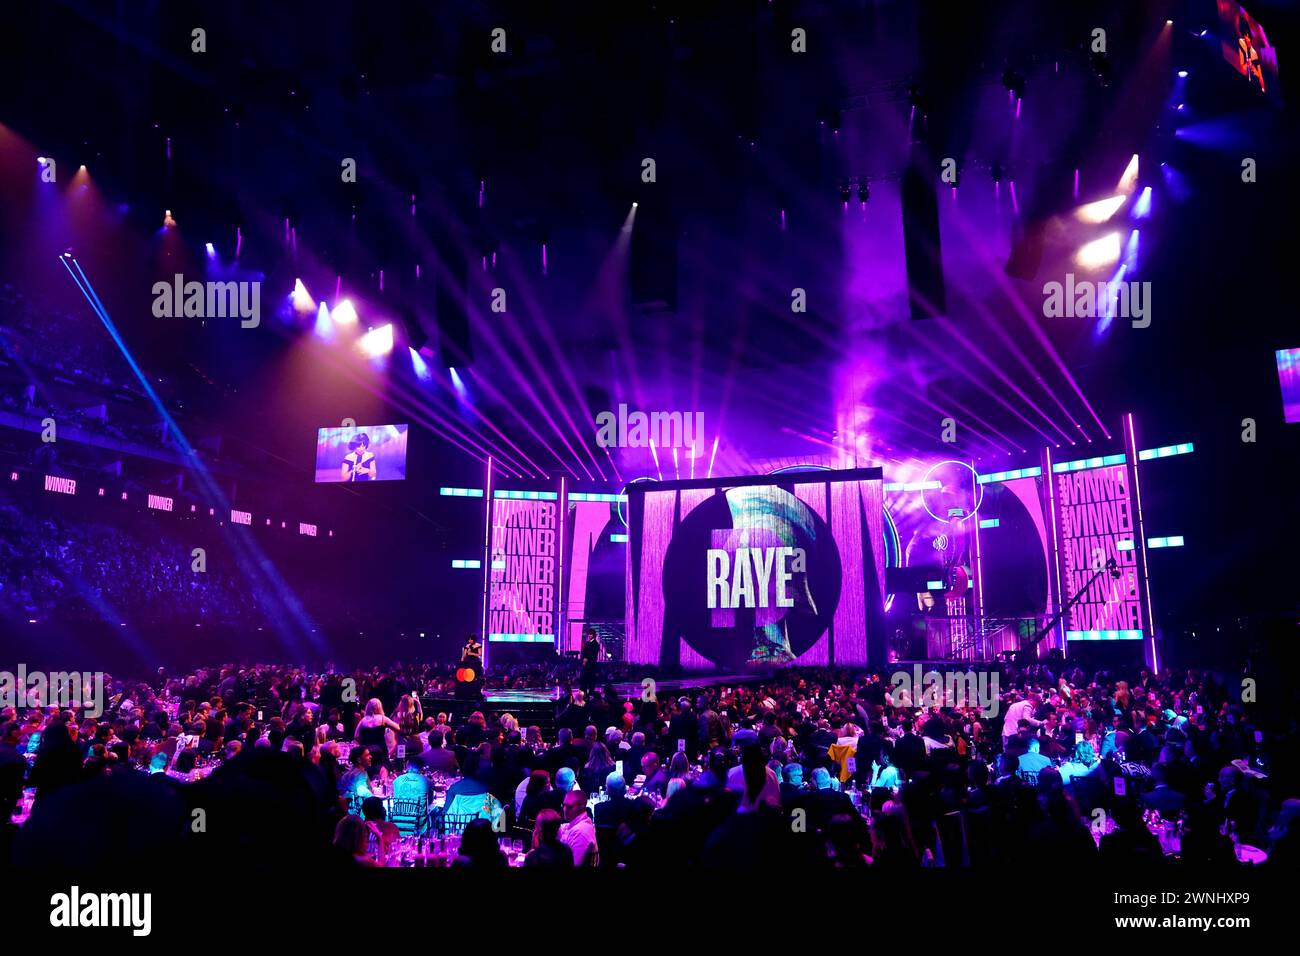 Raye war auf der Bühne, nachdem er den Preis für den besten neuen Künstler bei den Brit Awards 2024 in der O2 Arena in London gewonnen hatte. Bilddatum: Samstag, 2. März 2024. Stockfoto